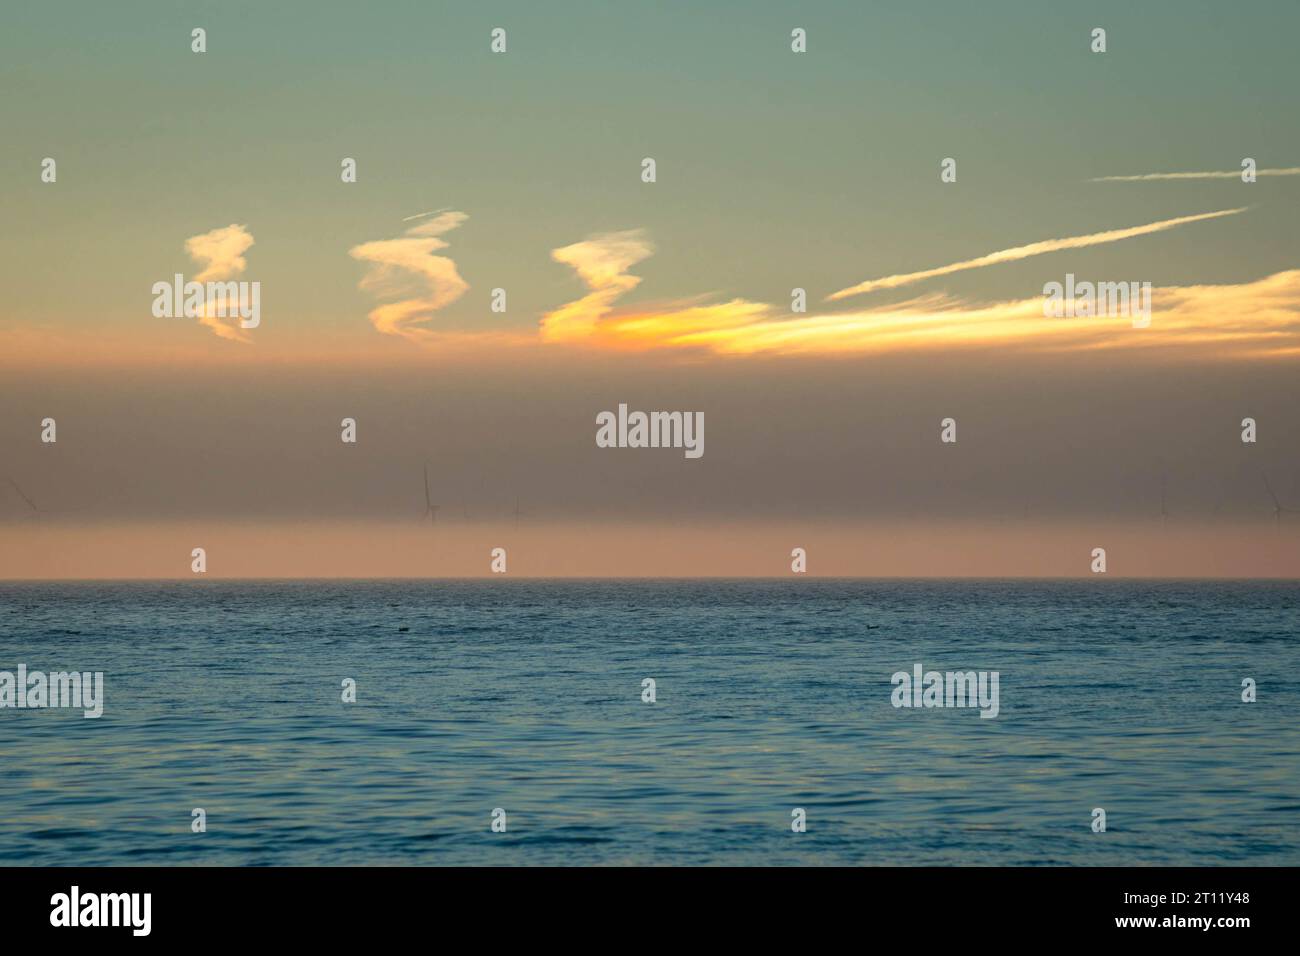 Wolken über der Nordsee bei einem farbenfrohen Sonnenuntergang, bei dem ein sundog oder parhelia in den Wolken sichtbar ist Stockfoto